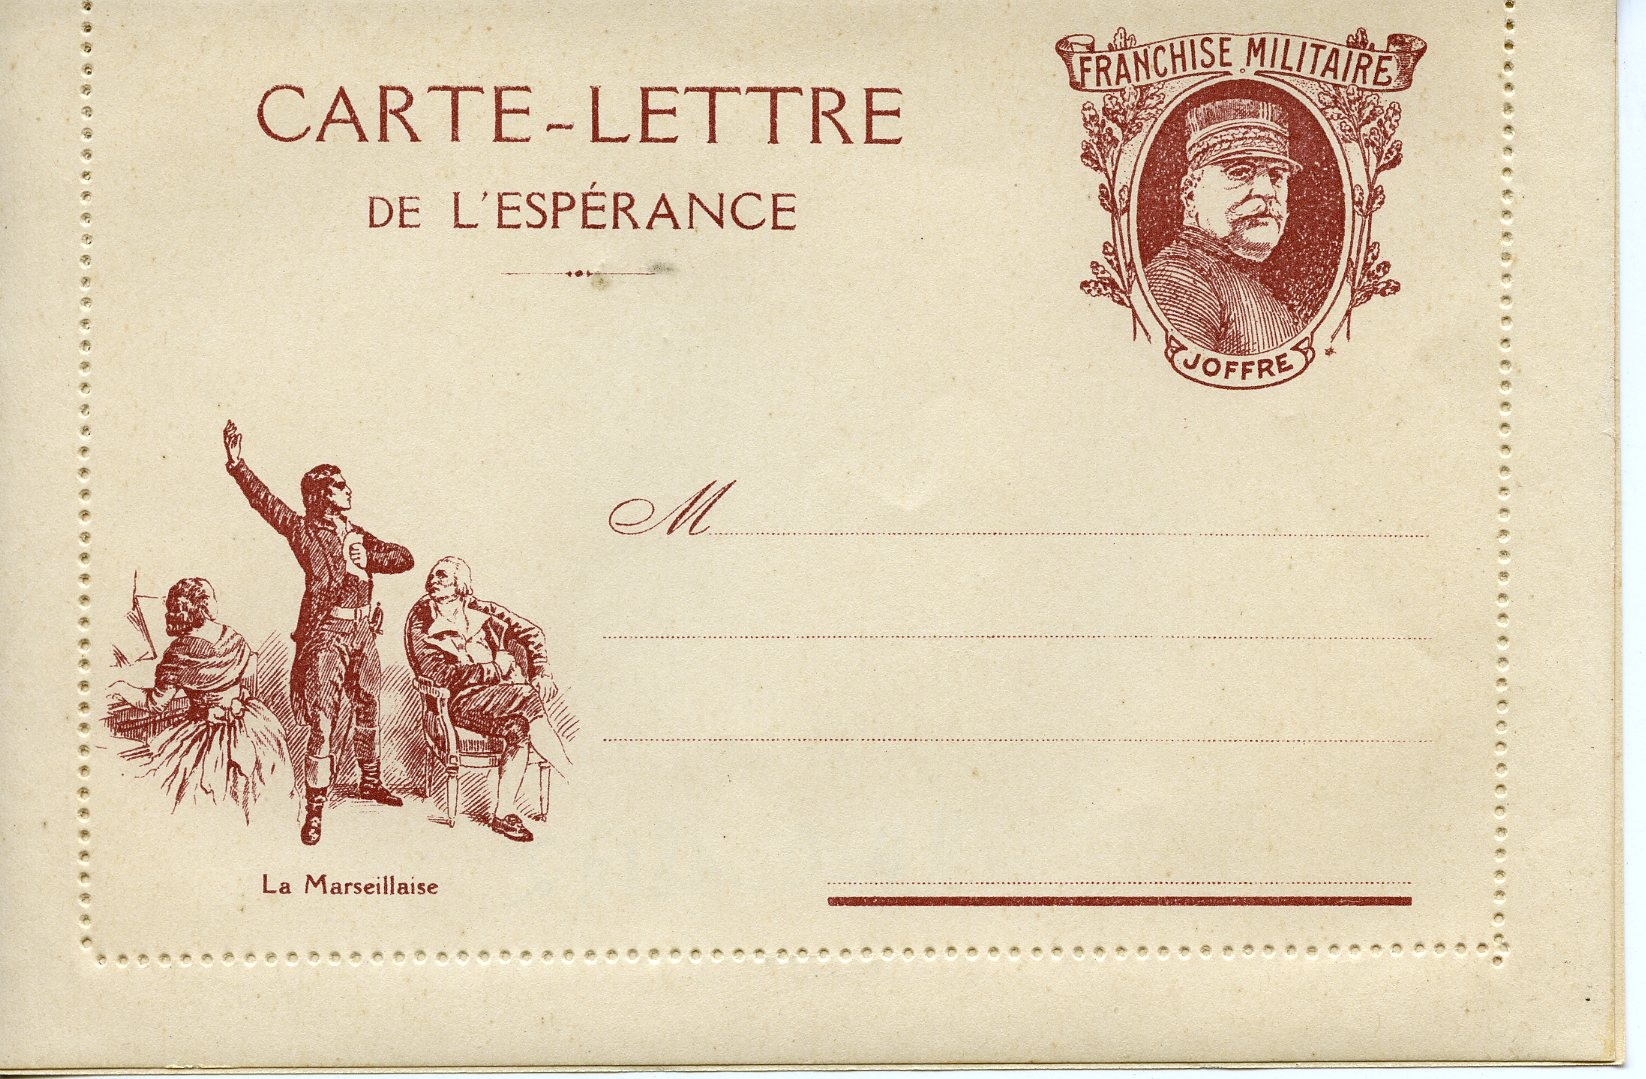 Postkarte "Carte-Lettre" (Historisches Museum der Pfalz, Speyer CC BY)